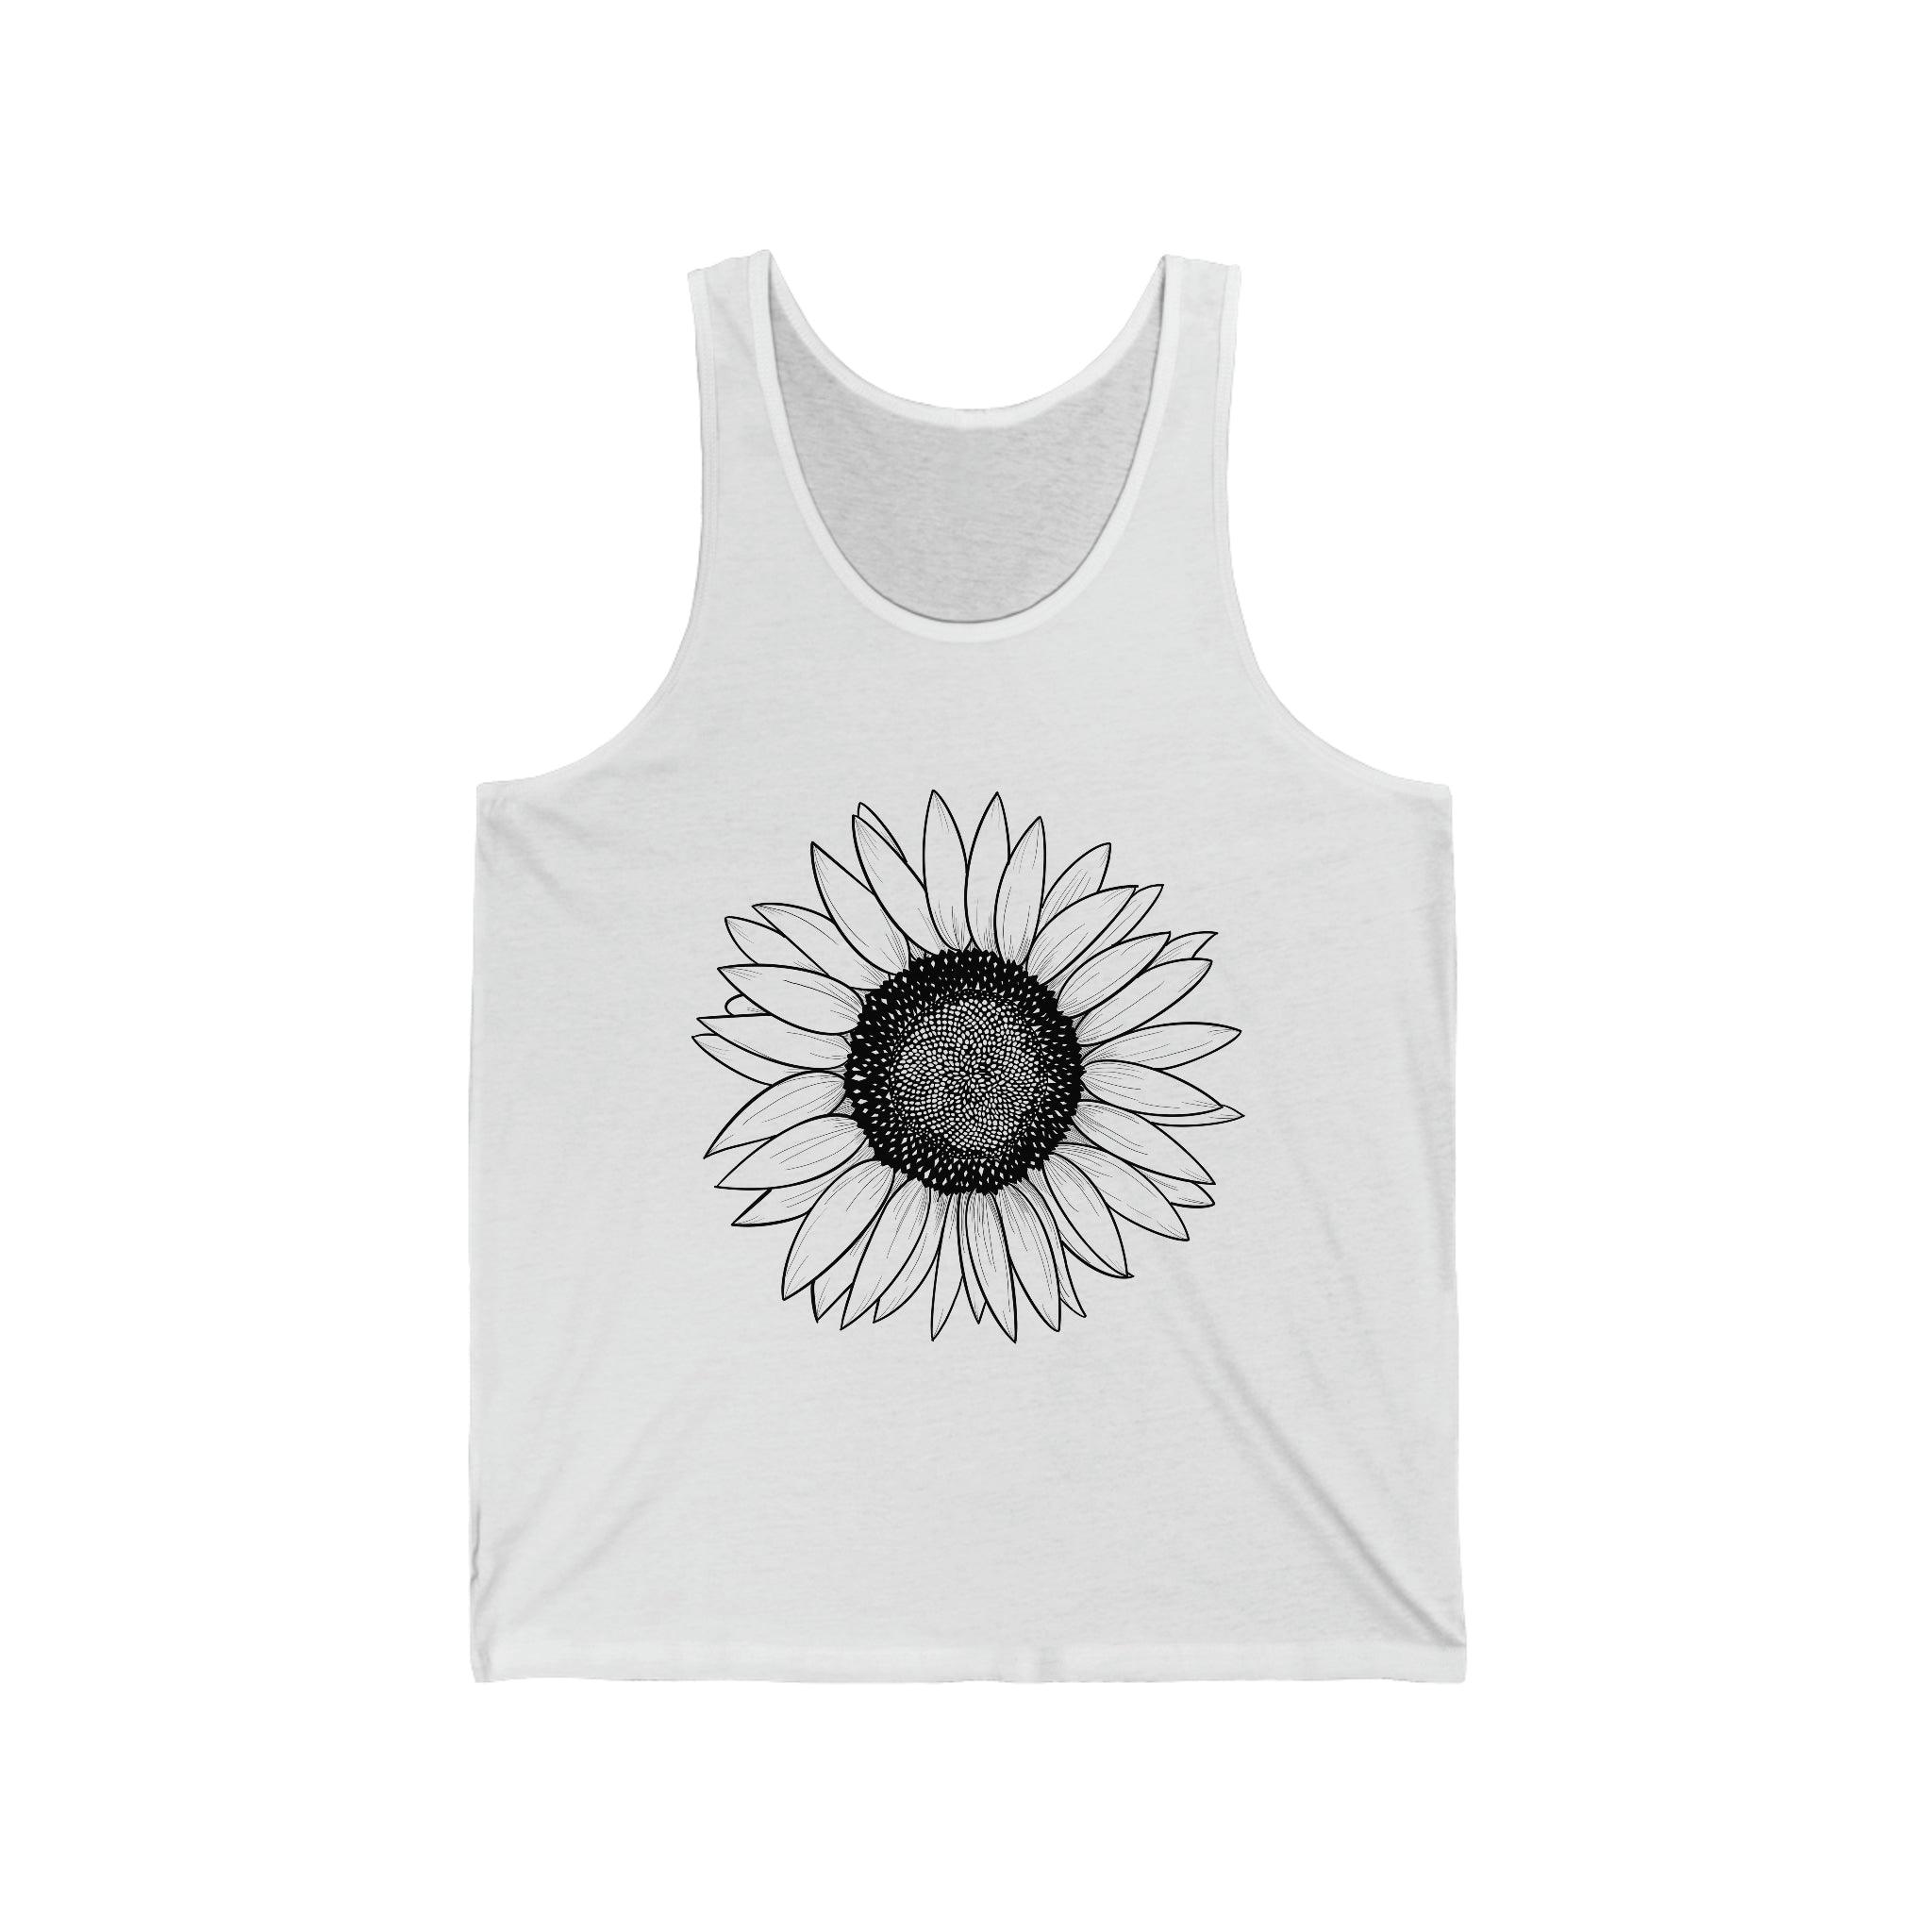 Sunflower Illustration 100% Cotton Unisex Jersey Tank - Melomys